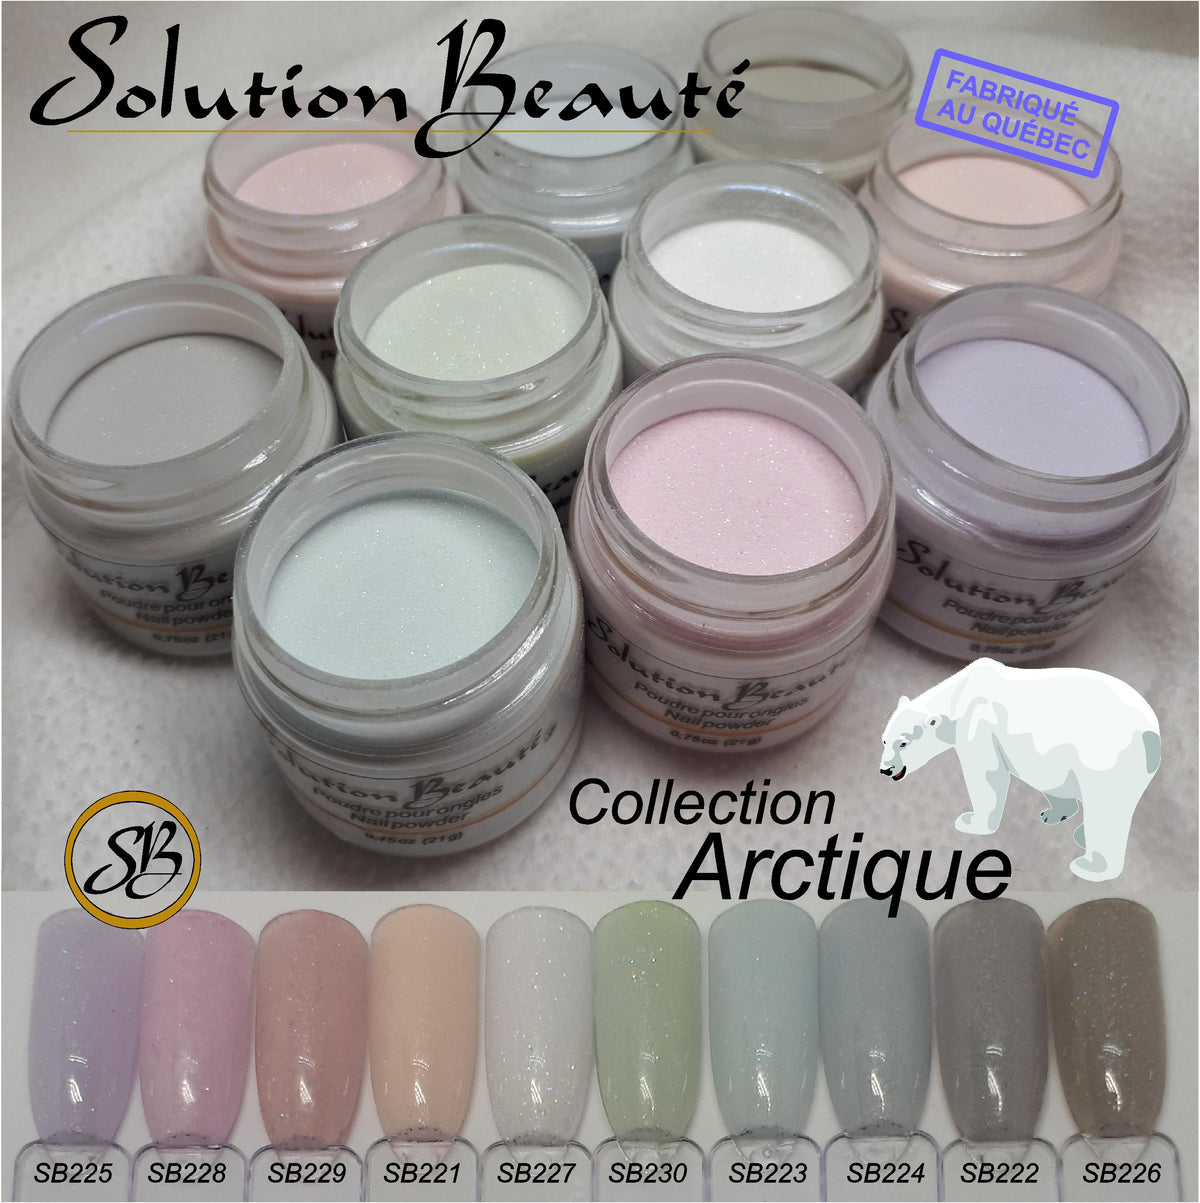 Poudre Solution Beauté Mini Collection Arctique